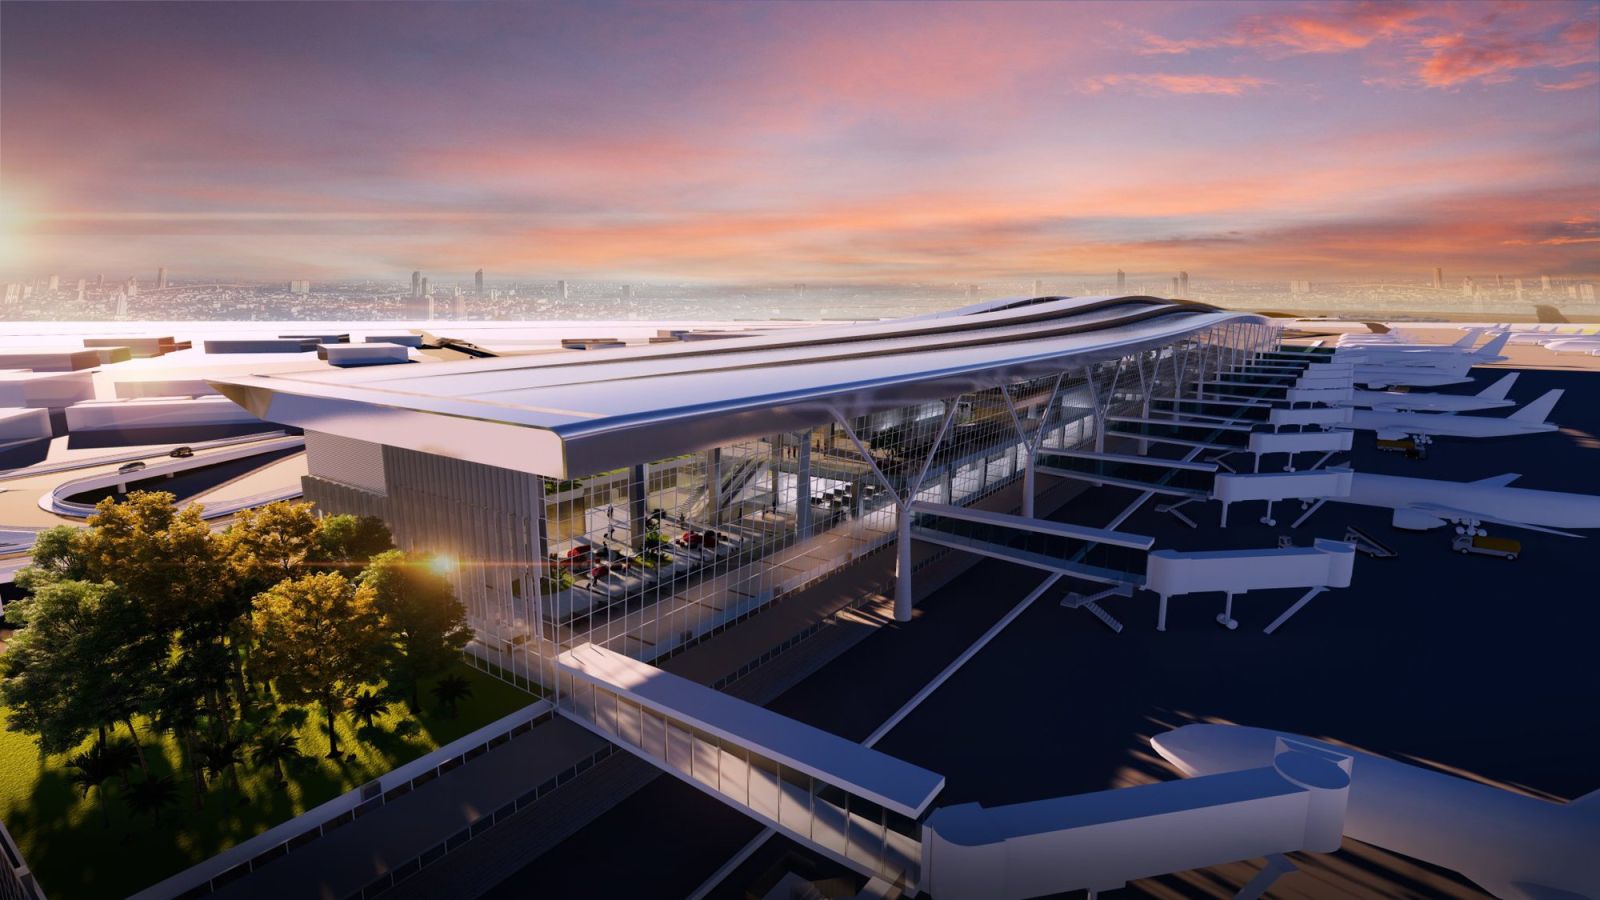 nhà ga T3 sân bay Tân Sơn Nhất đã được Chính phủ duyệt chủ trương đầu tư hai năm trước với kinh phí gần 11.000 tỷ đồng